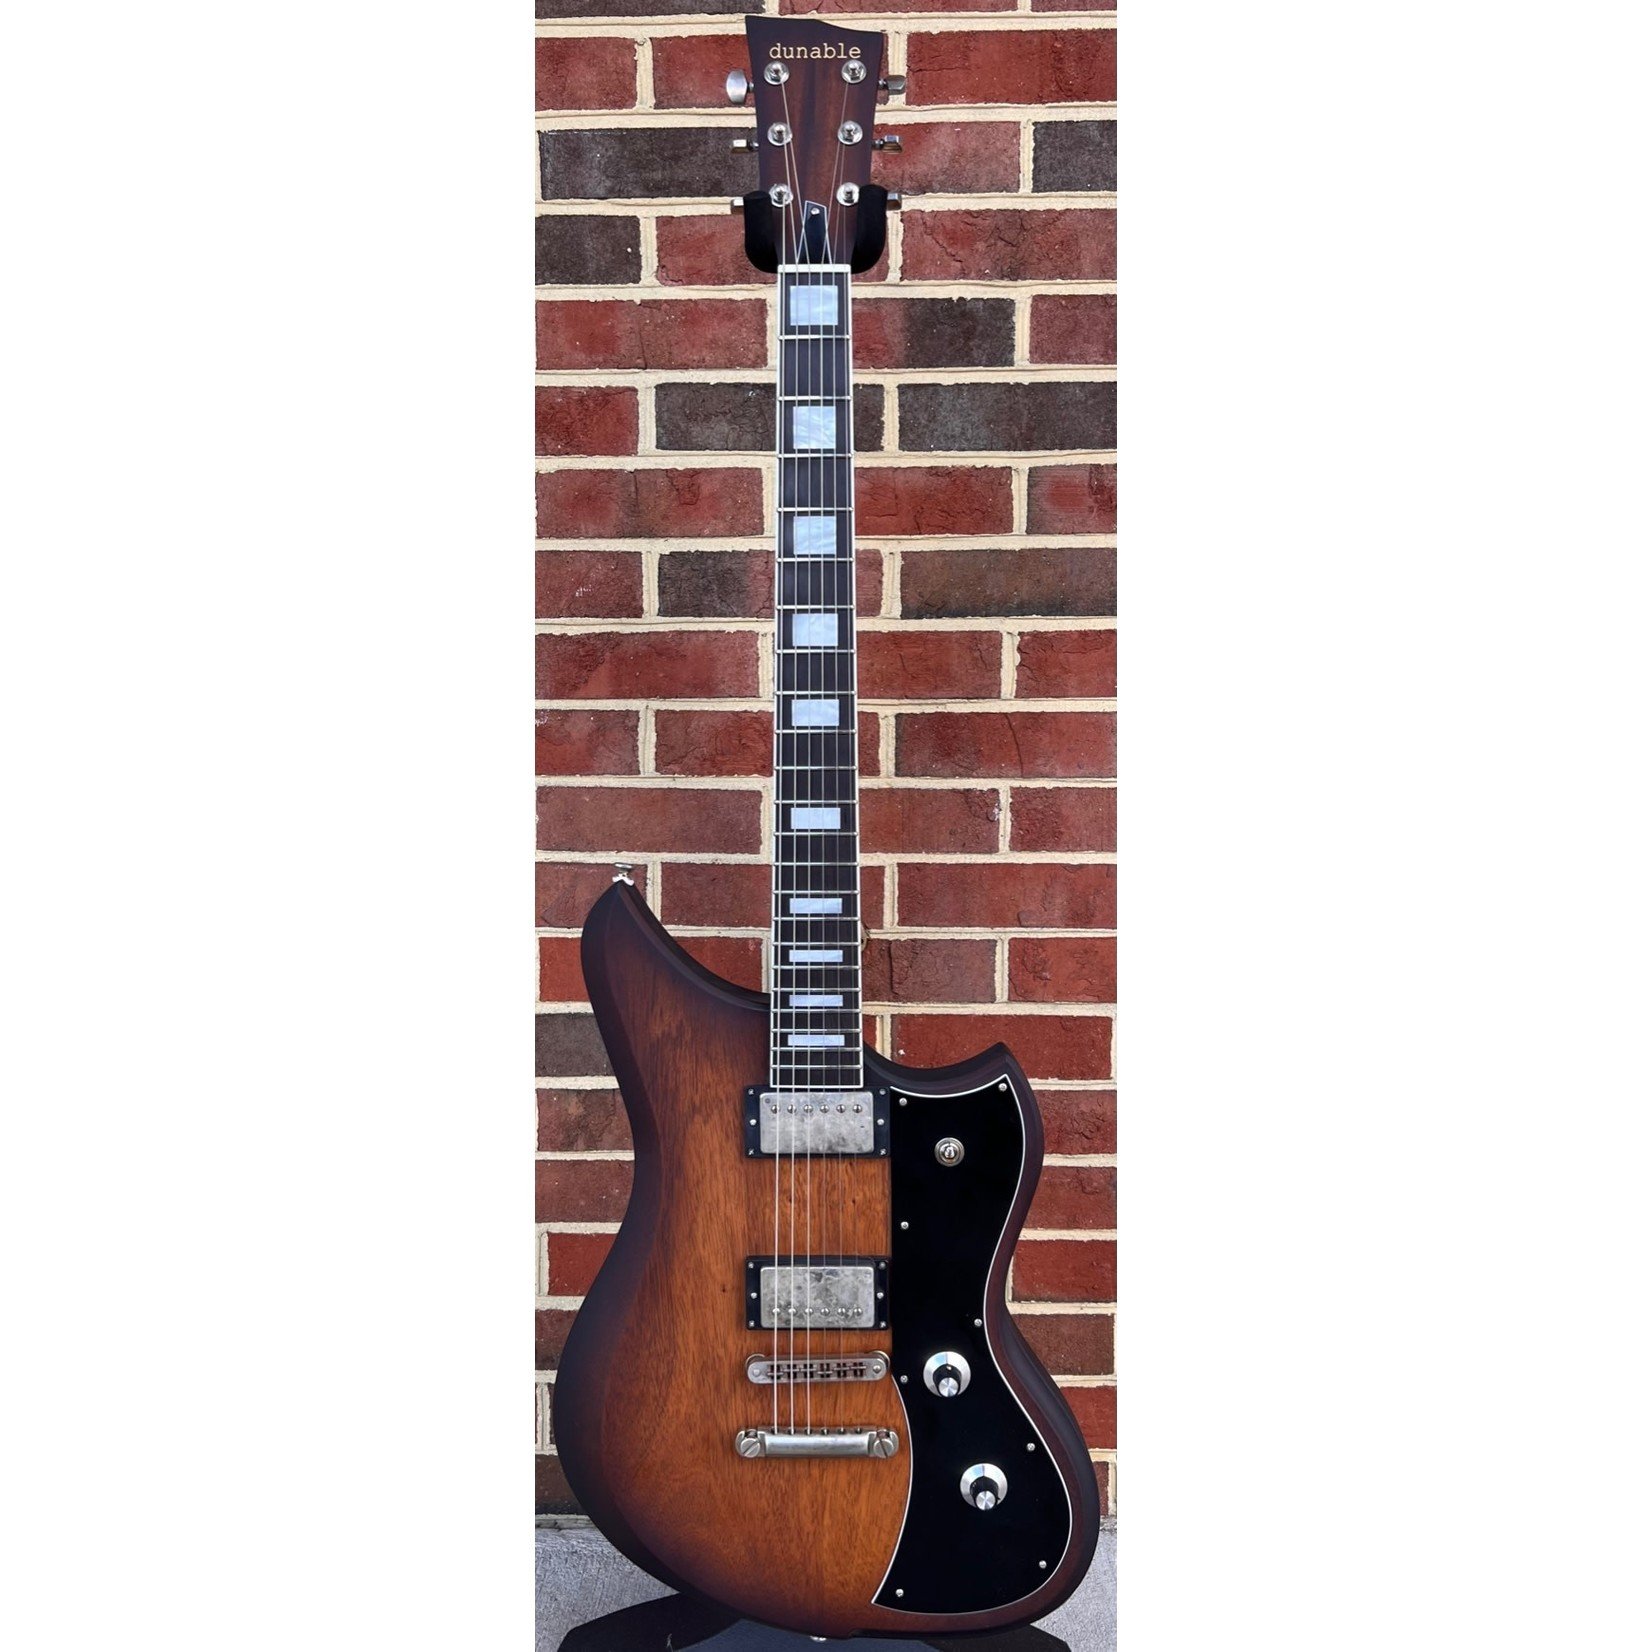 Dunable Guitars Dunable USA Custom Shop Yeti, Genuine Mahogany Body, Genuine Mahogany Neck, Ebony Fretboard, Block Inlays, Hardshell Case